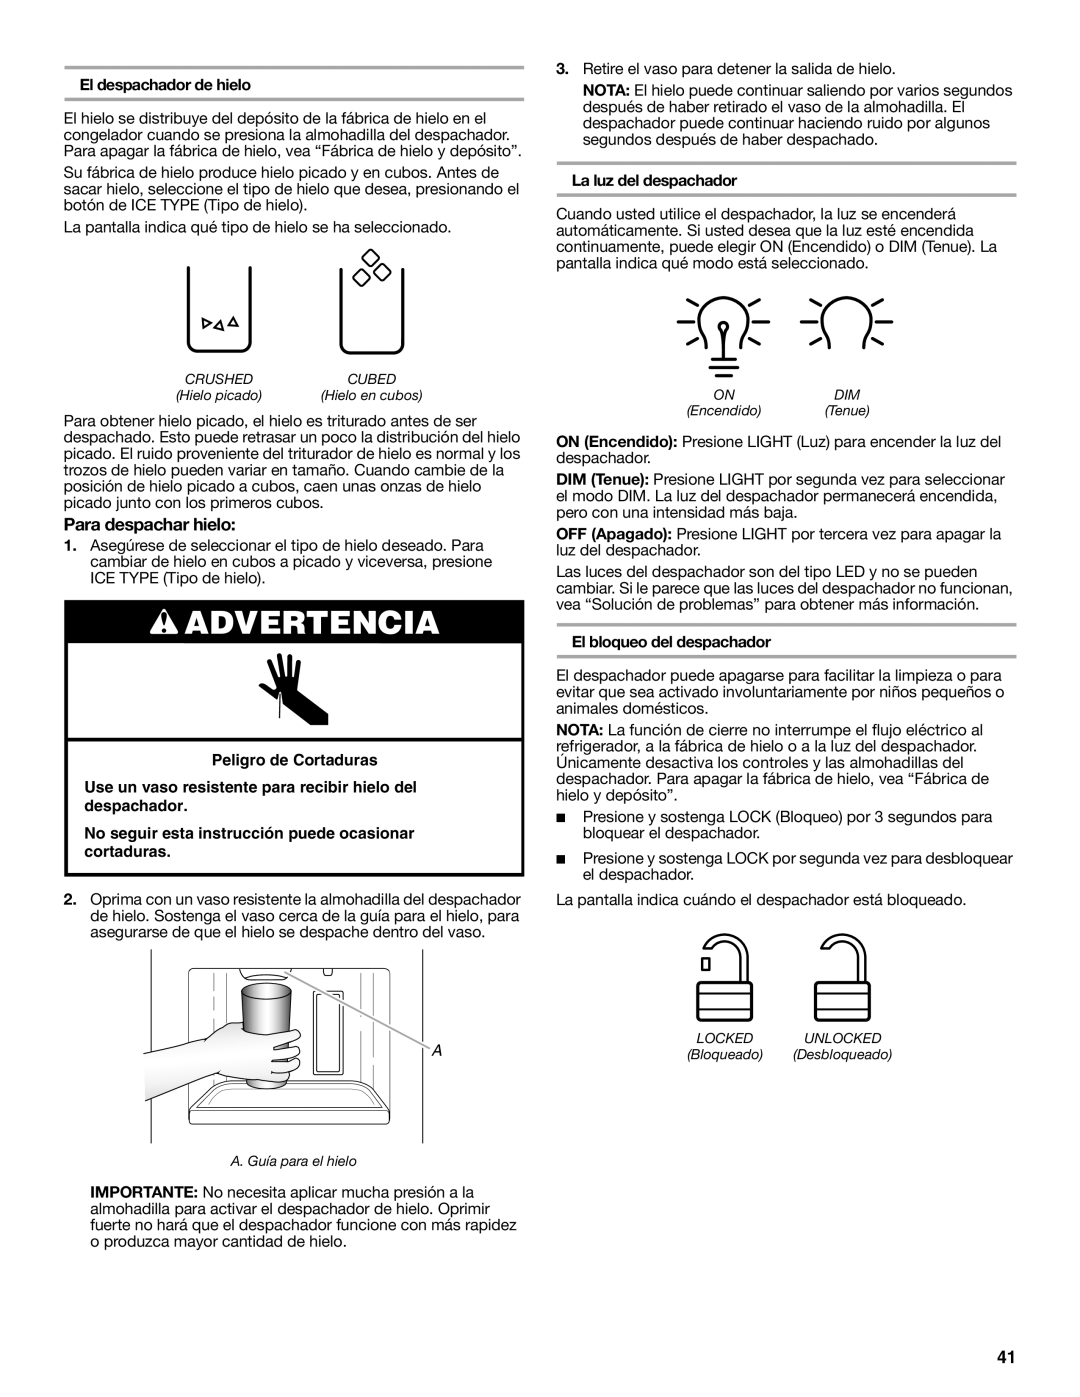 Whirlpool W10632883A installation instructions Para despachar hielo, Advertencia, Peligro de Cortaduras 